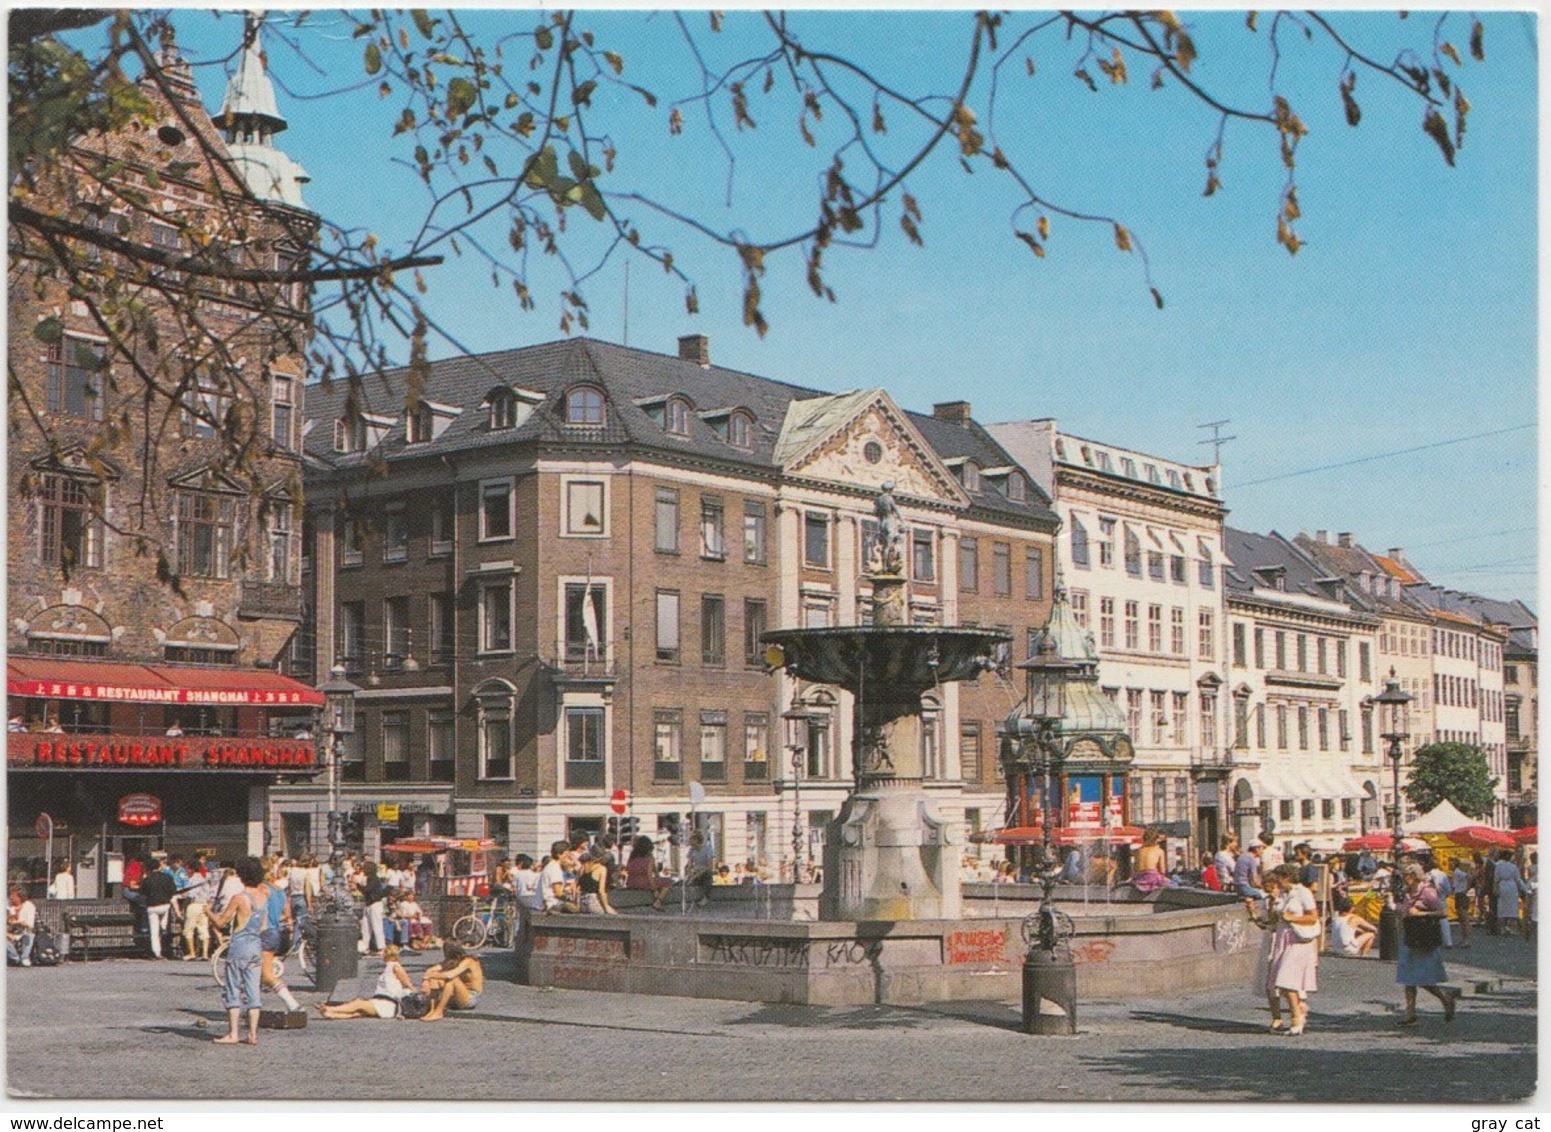 KOBENHAVN, COPENHAGEN, Gammel Torv, The Square, 1987 Used Postcard [22188] - Denmark